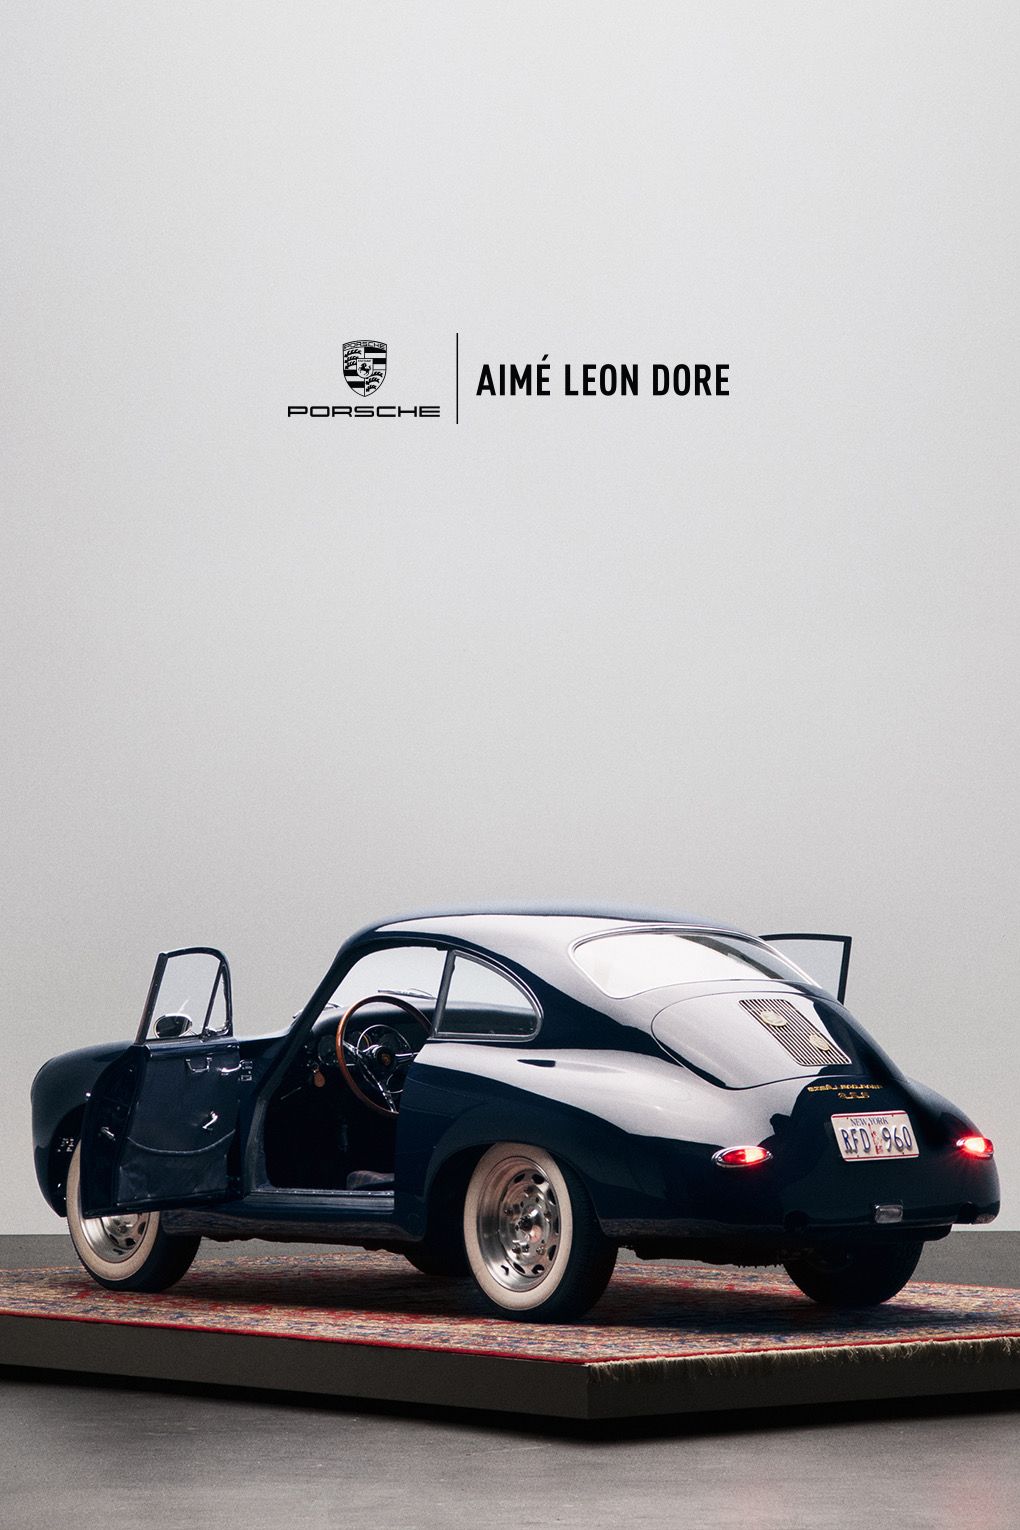 The Aimé Leon Dore Porsche 911SC